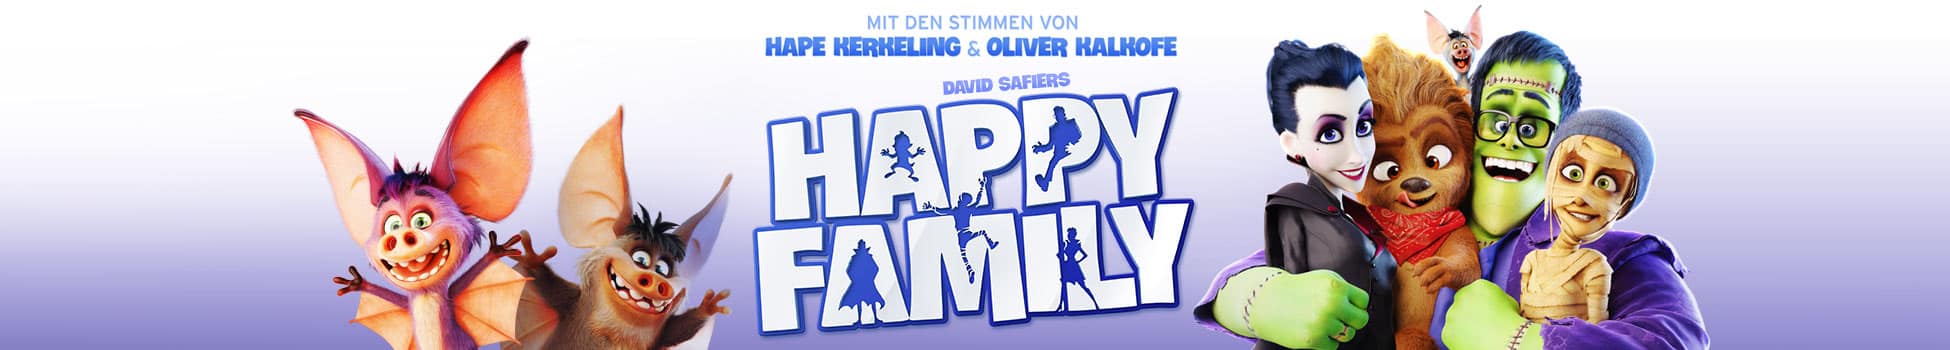 Happy Family - Artwork - Key Visual - Header